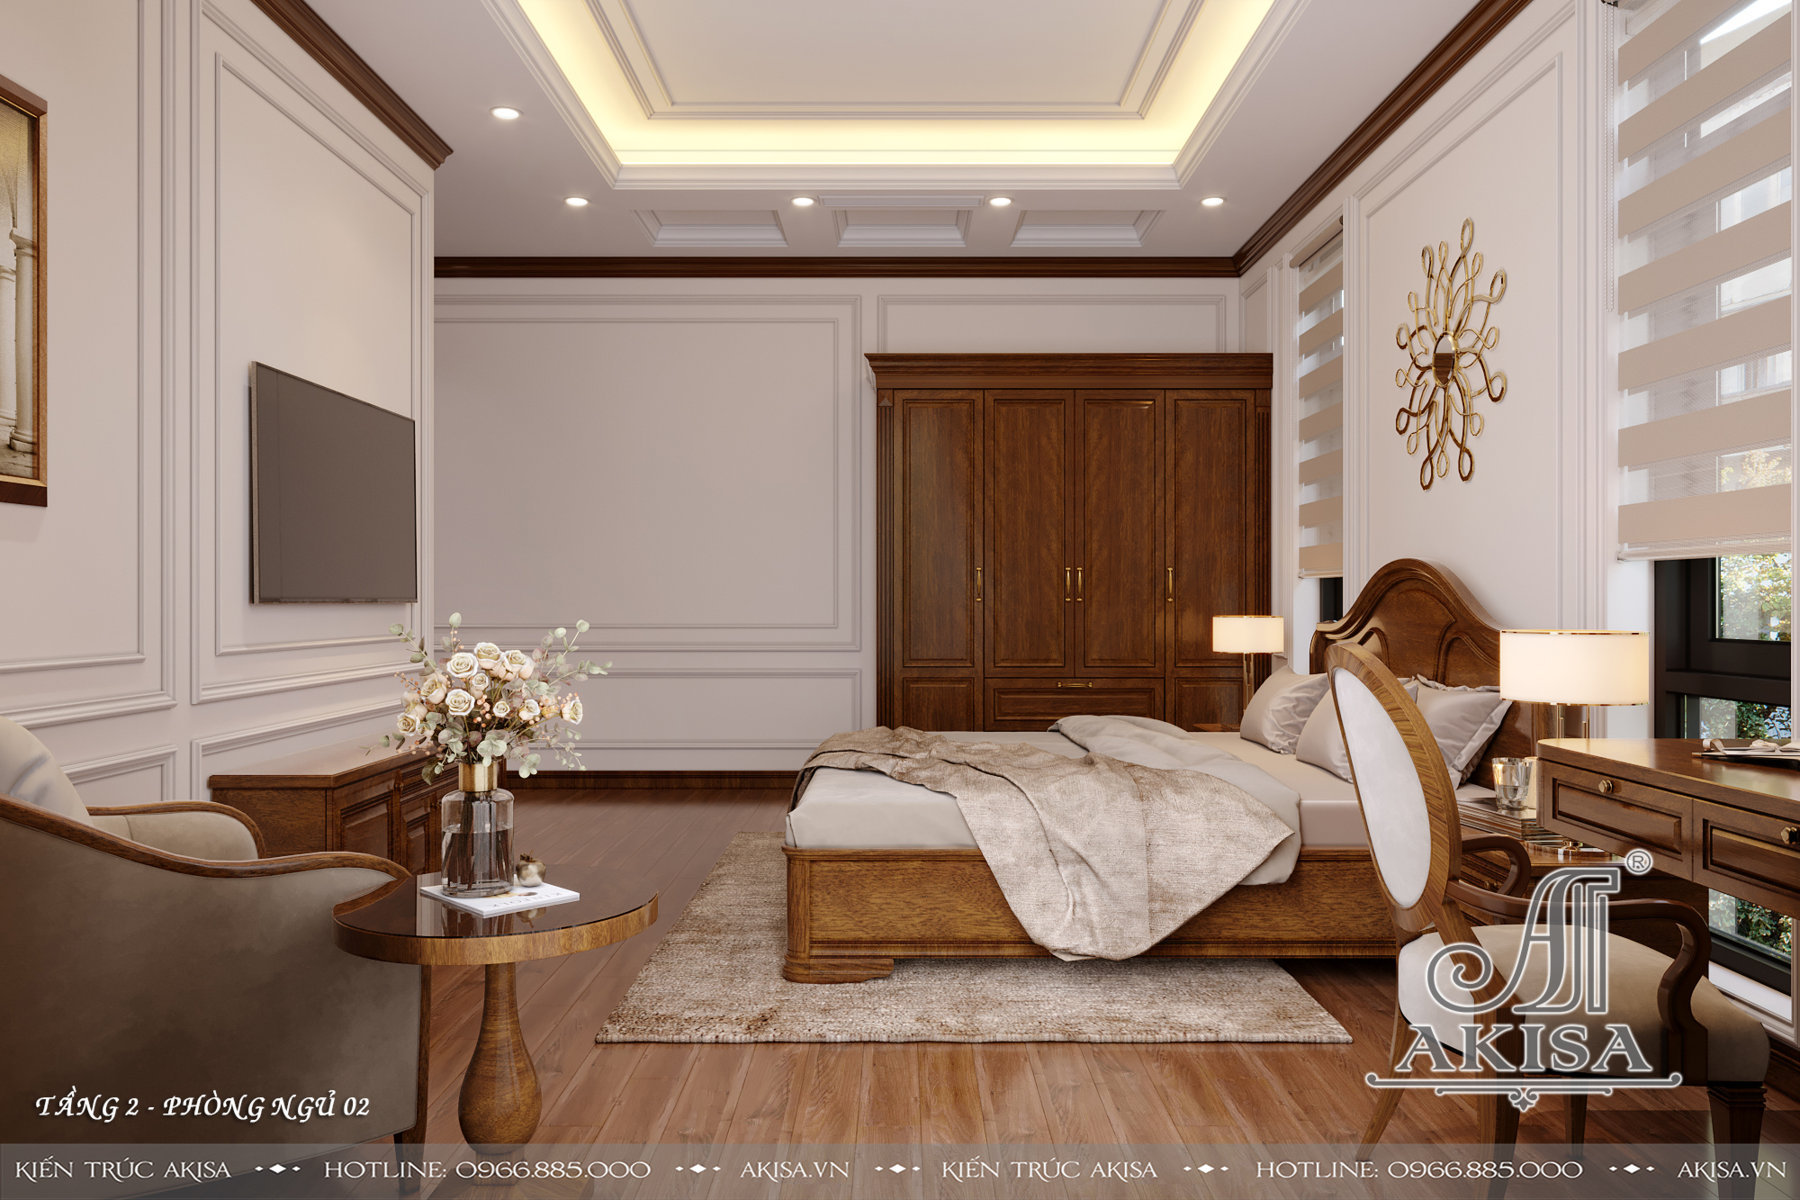 Thiết kế nội thất phong cách tân cổ điển nhẹ nhàng - Phòng ngủ